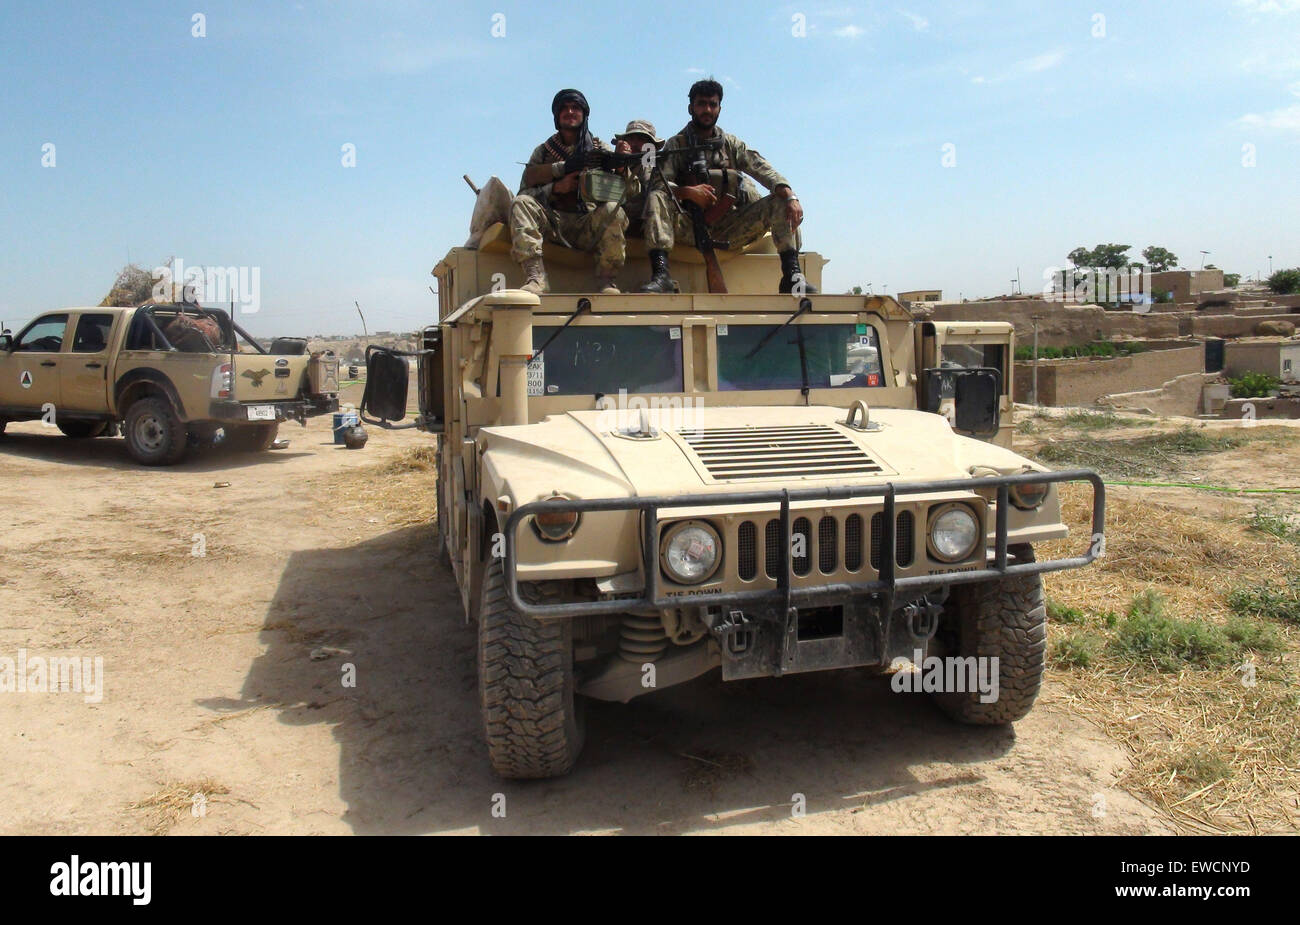 (150623) -- KUNDUZ, 23 giugno 2015 (Xinhua) -- soldati afgani vegliano su di un veicolo militare durante un'operazione contro i talebani nella provincia di Kunduz, Afghanistan settentrionale, 23 giugno 2015. Forze di sicurezza nazionali afgane (ANSF) Martedì riconquistò un distretto nel nord della provincia di Kunduz sequestrato da militanti talebani durante il fine settimana, uccidendo oltre 80 ribelli, provinciale portavoce del governo ha detto. (Xinhua/Ajmal) (zjy) Foto Stock